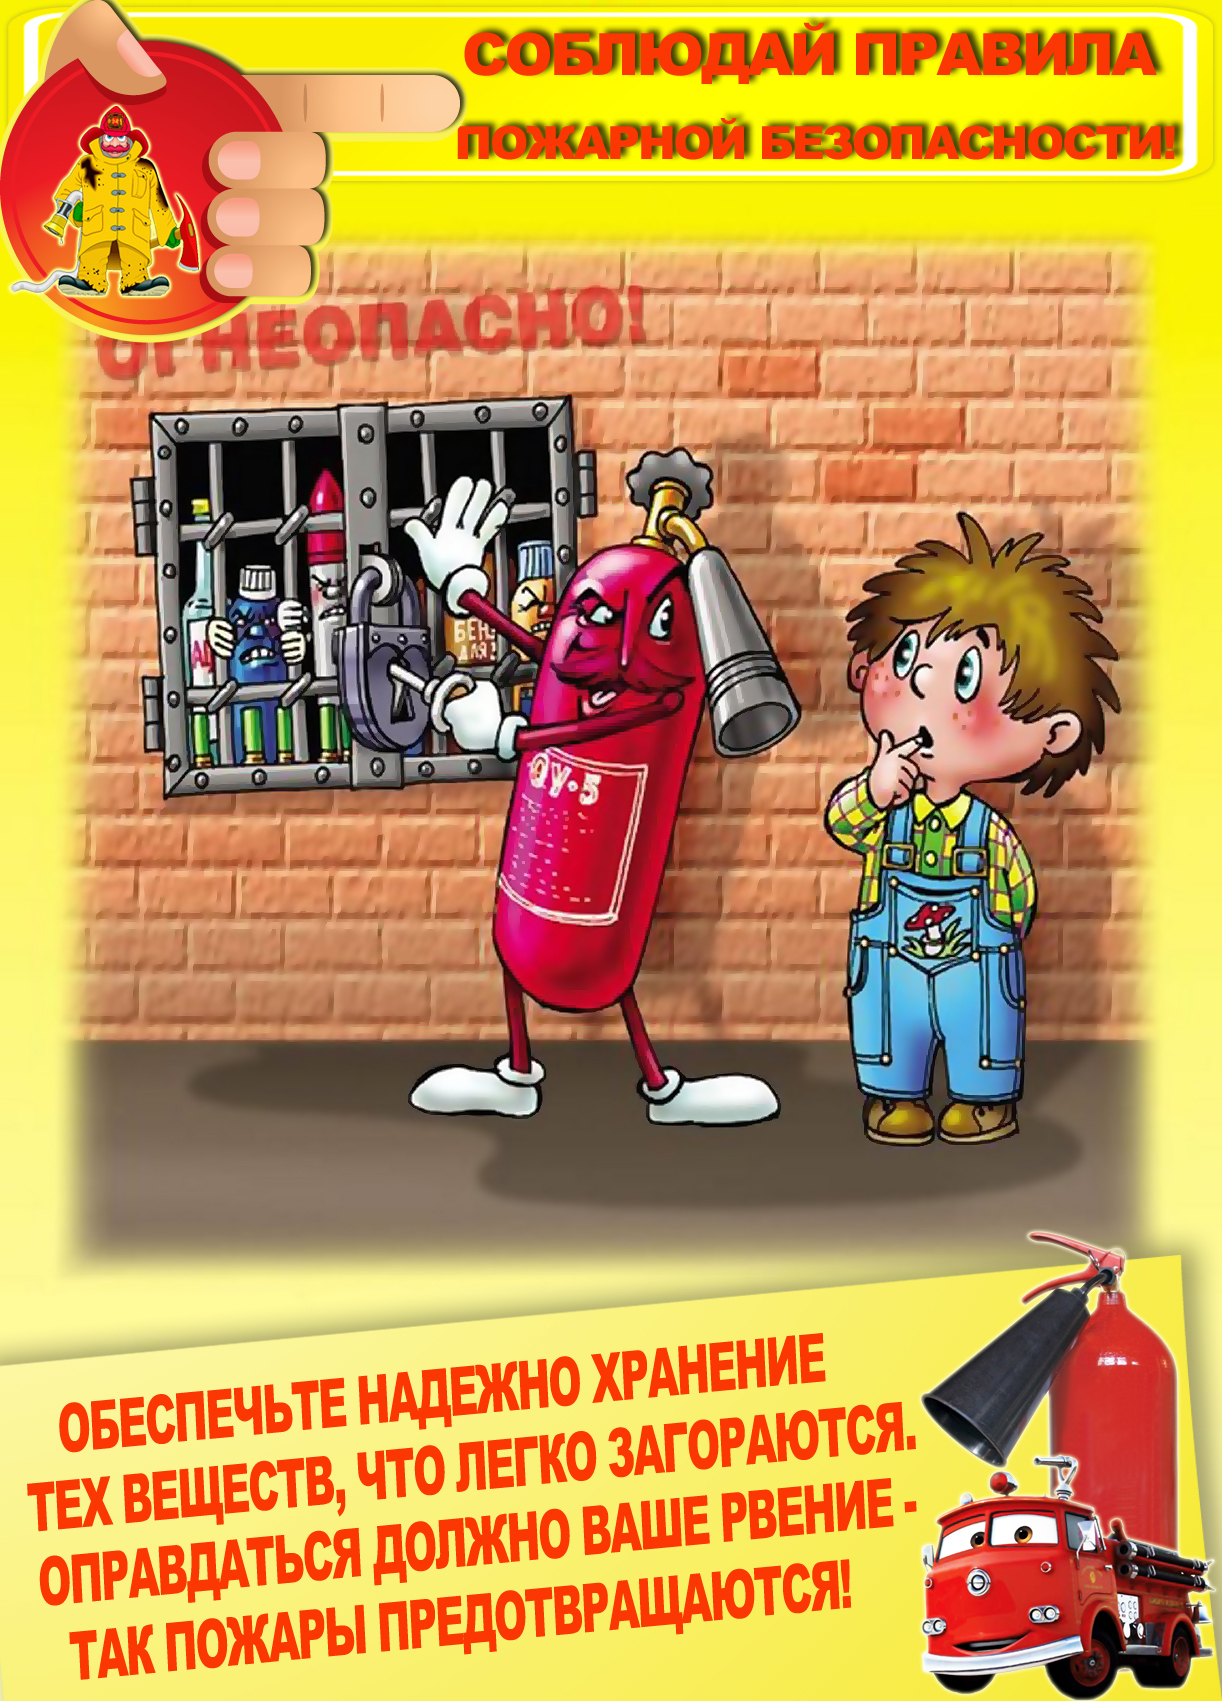 Пожарная безопасность картинки. Правила пожарной безопасности. Правила пожарной безопасностт. Пожарная безопасность для детей. Правила пожарной безопасности для детей.